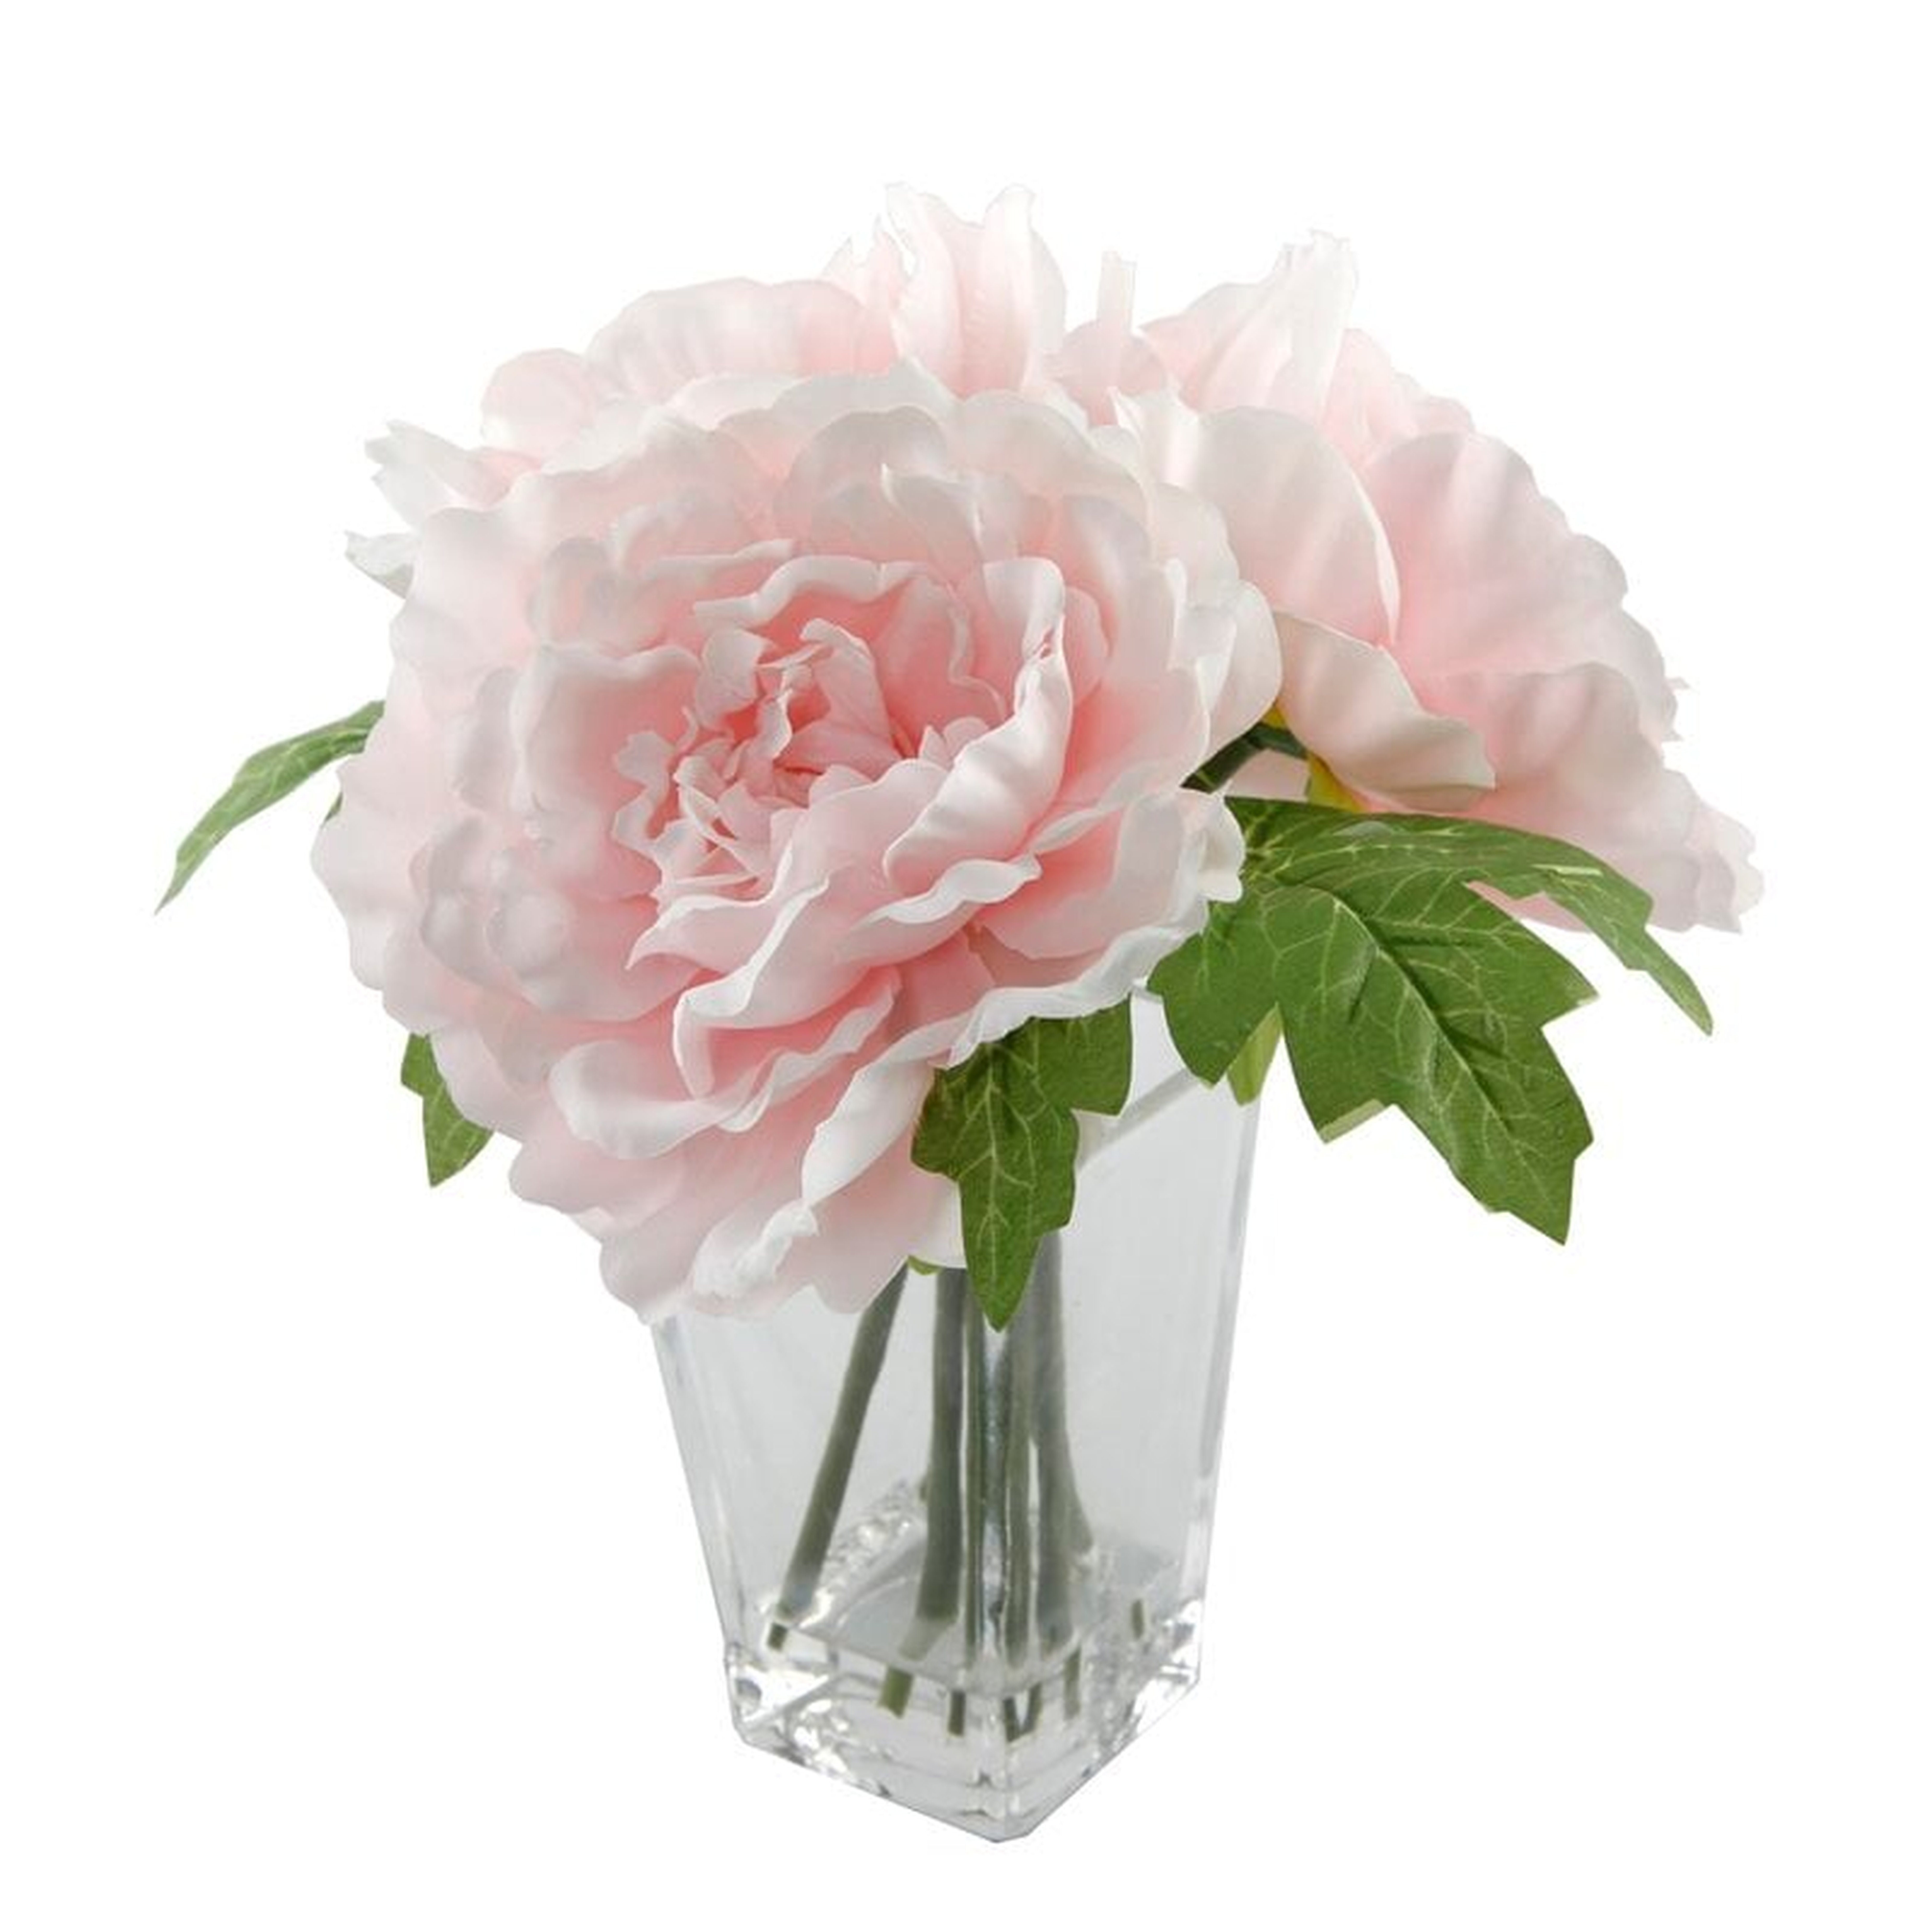 Silk Peonie Floral Arrangement and Centerpiece in Vase - Wayfair